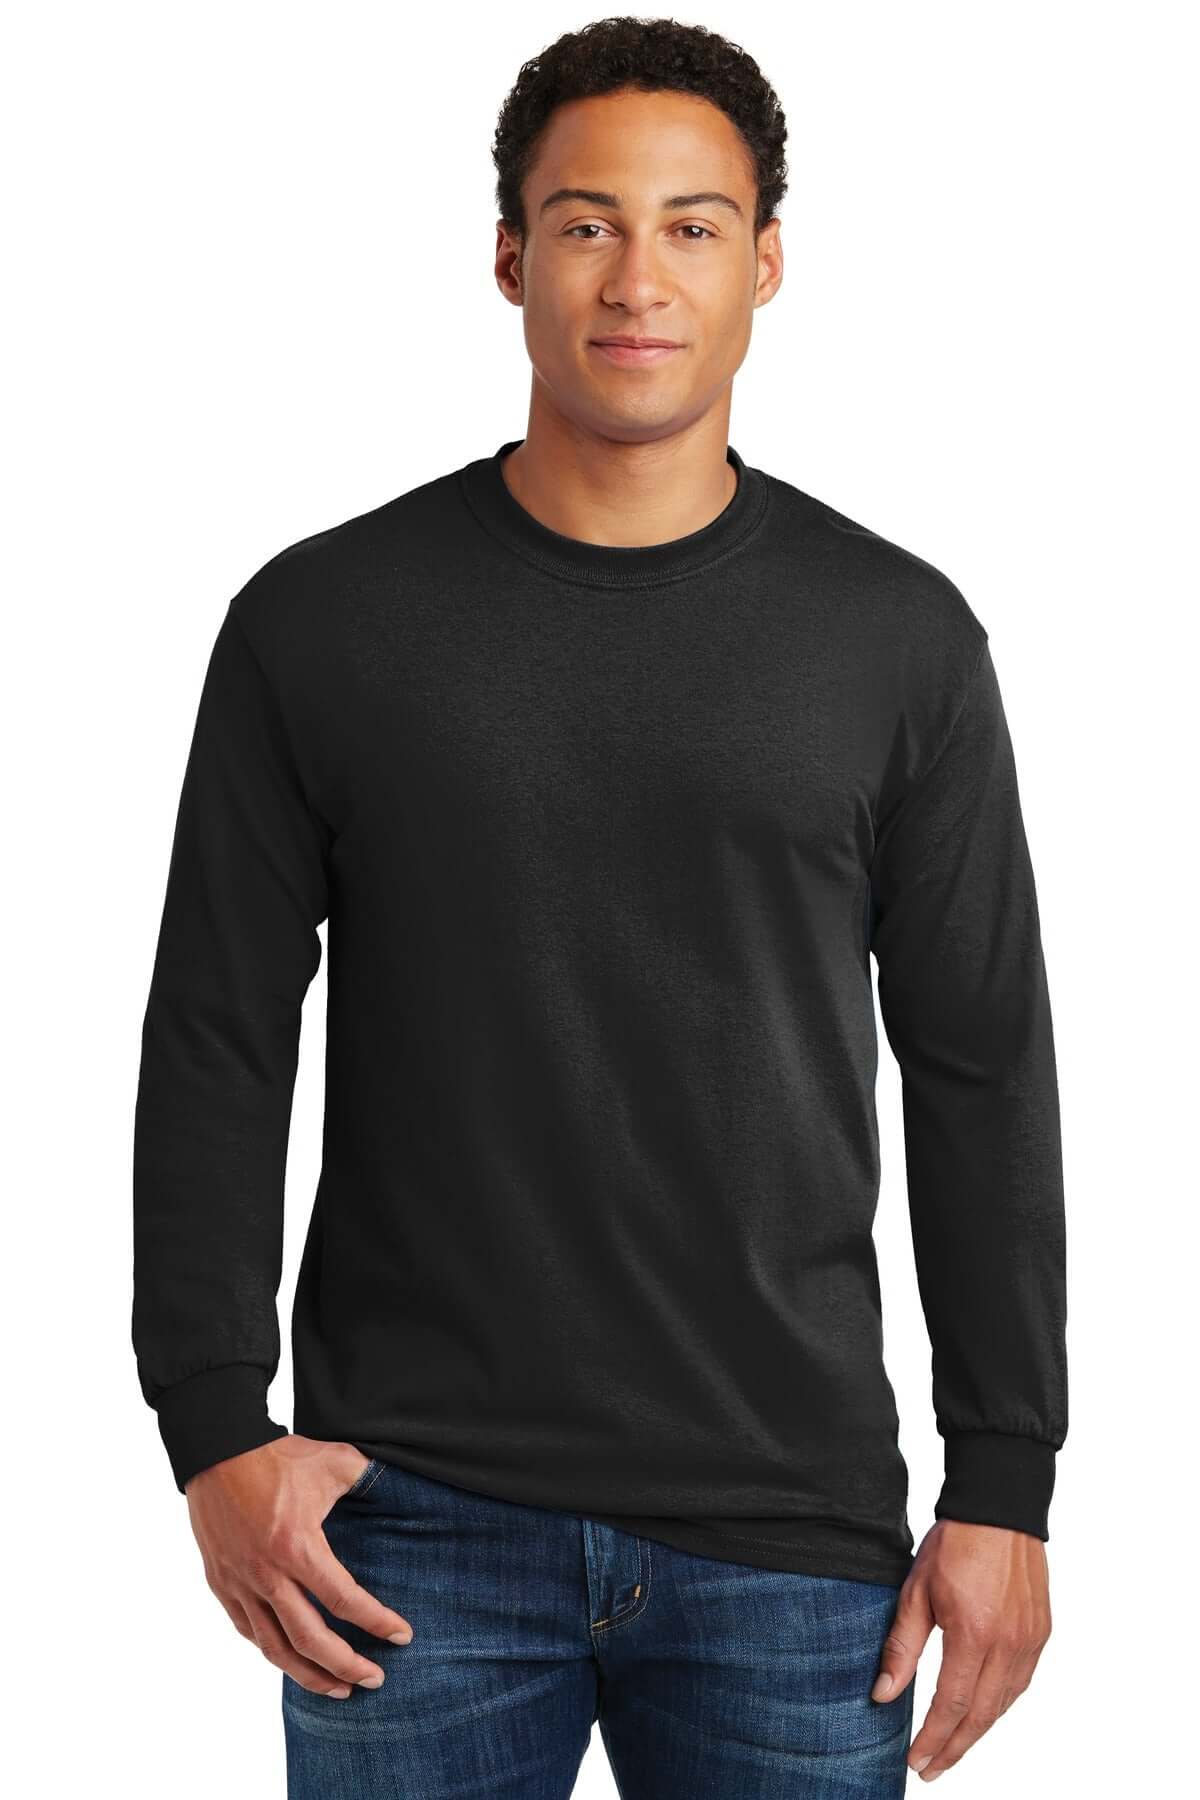 Takt Pastor omfattende Buy Plain Long Sleeve Round Neck T-Shirts For Mens - Gildan 5400